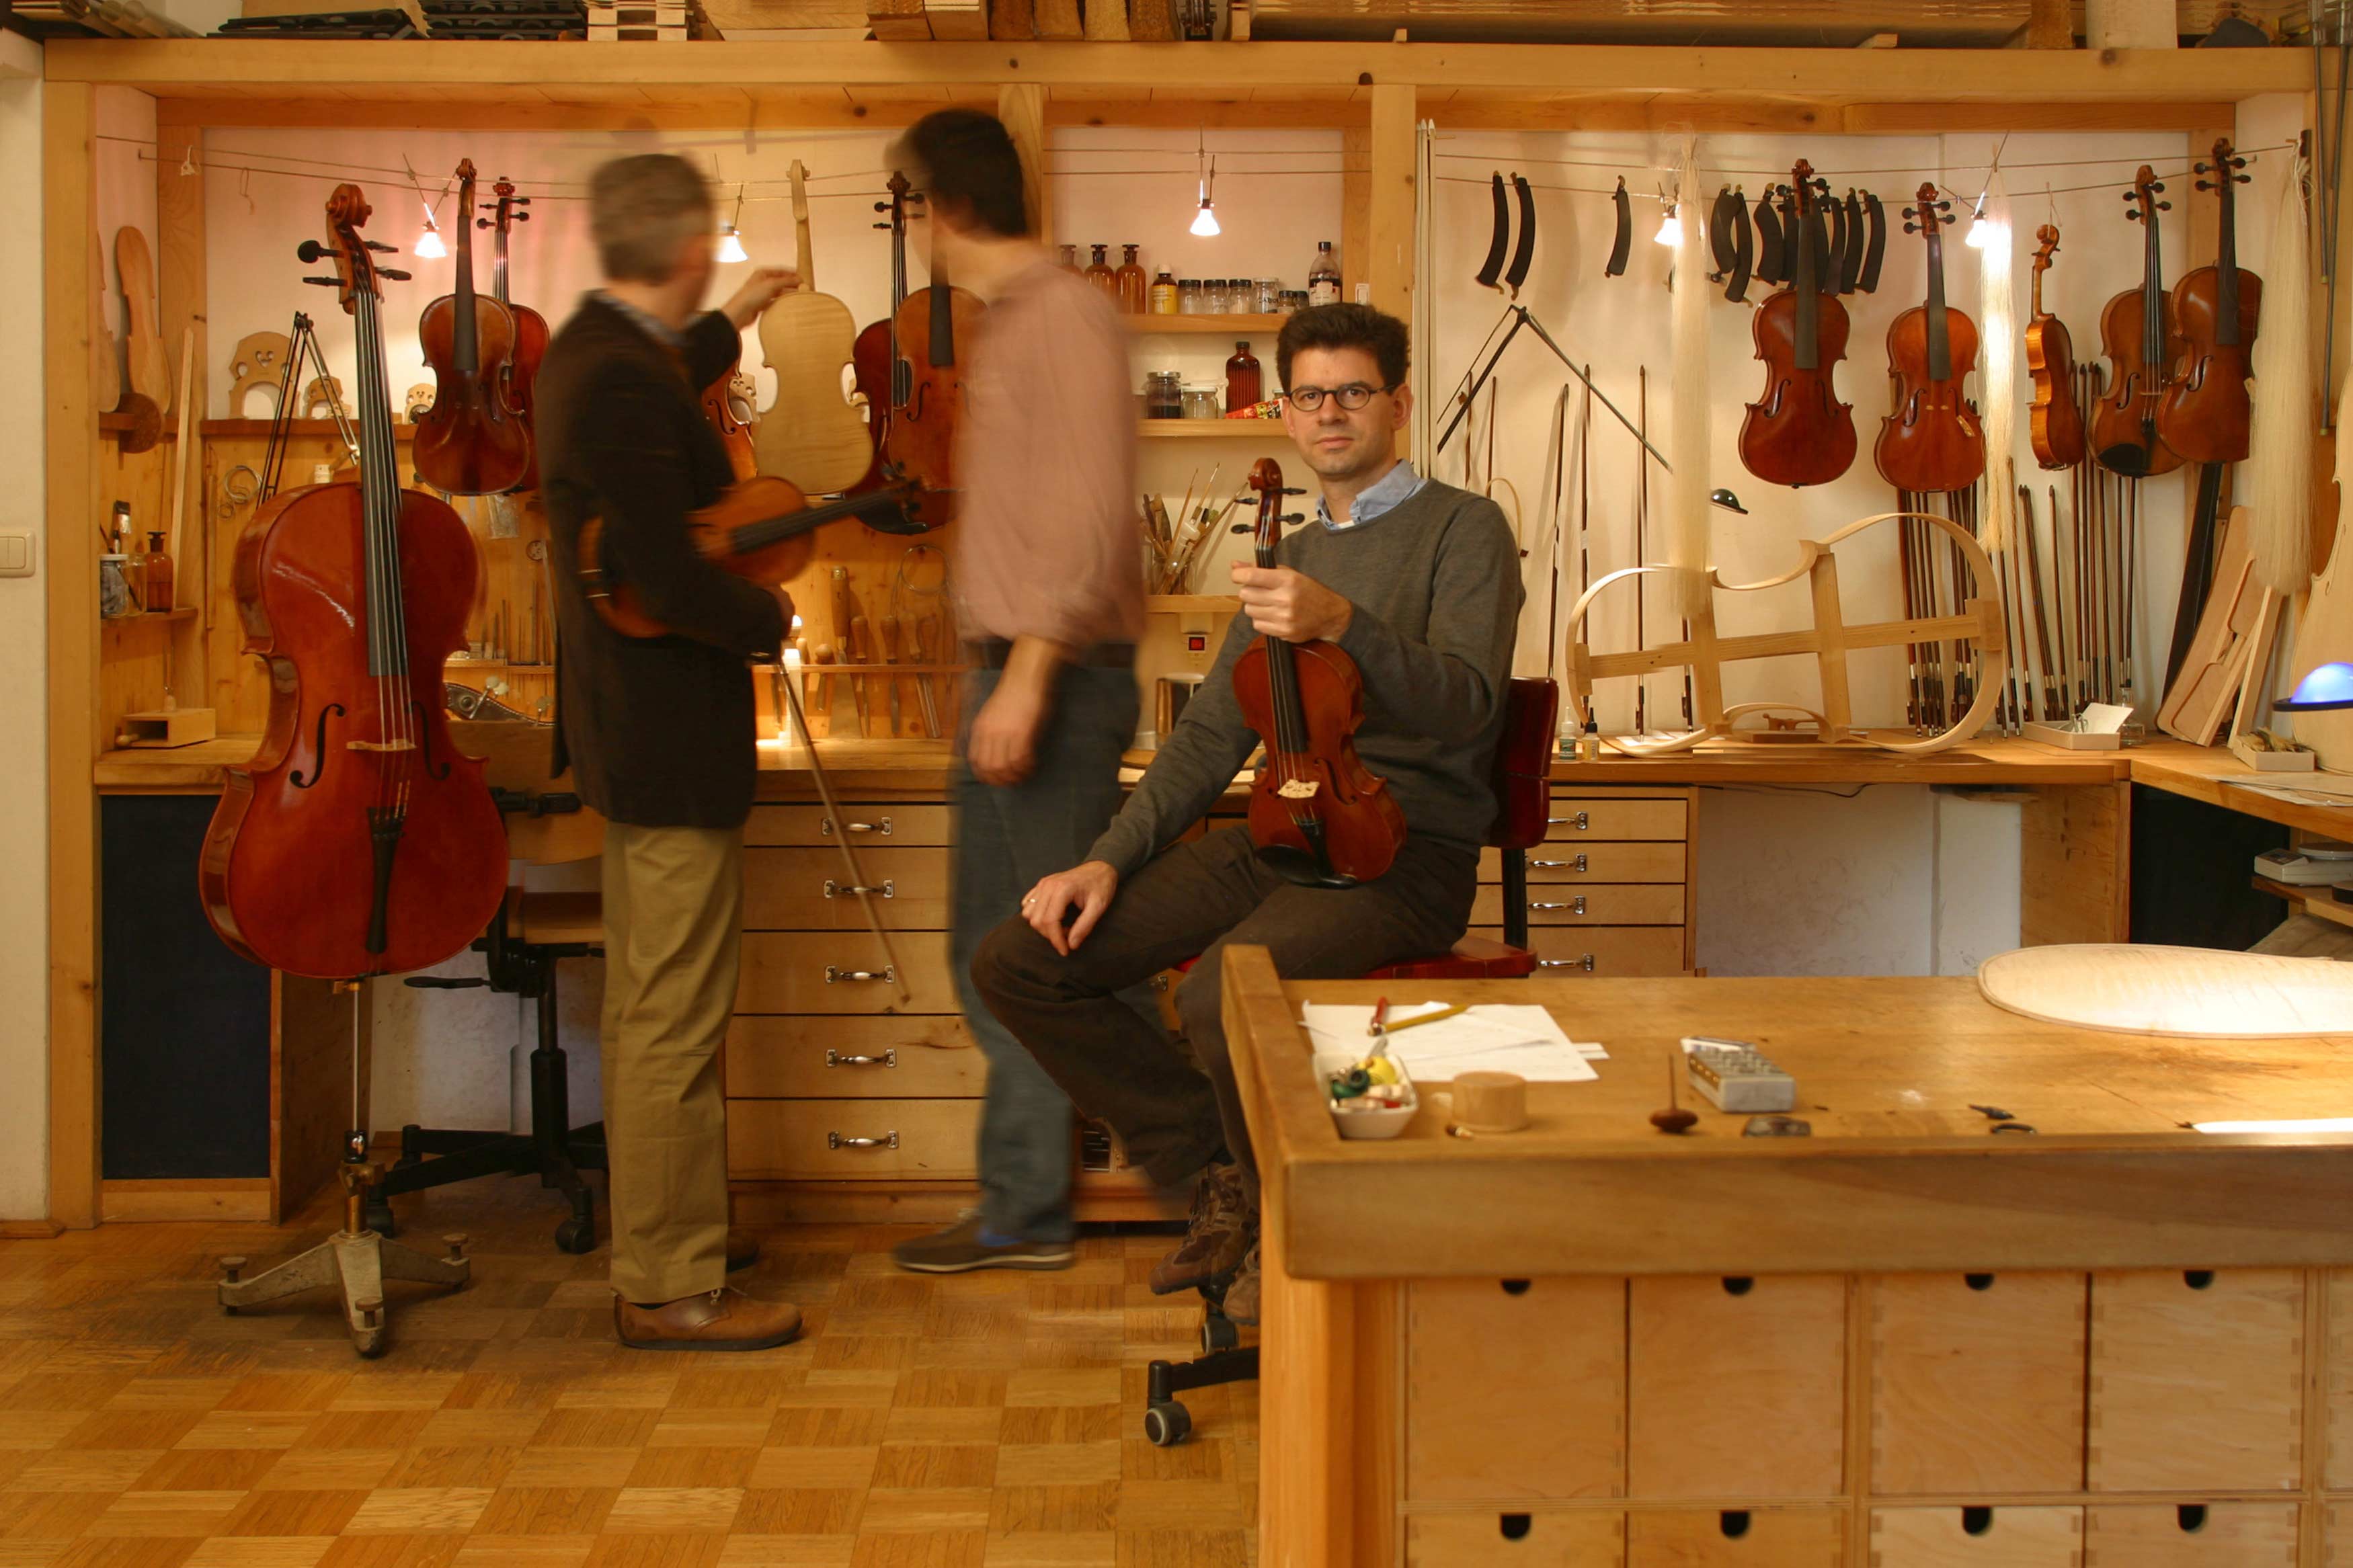 In einer Geigenbauwerkstatt. Geigenbaumeister sitzt an der Werkbank und haltet Geige in Hand. Hinter ihm stehen 2 Personen und begutachten Instrumente.